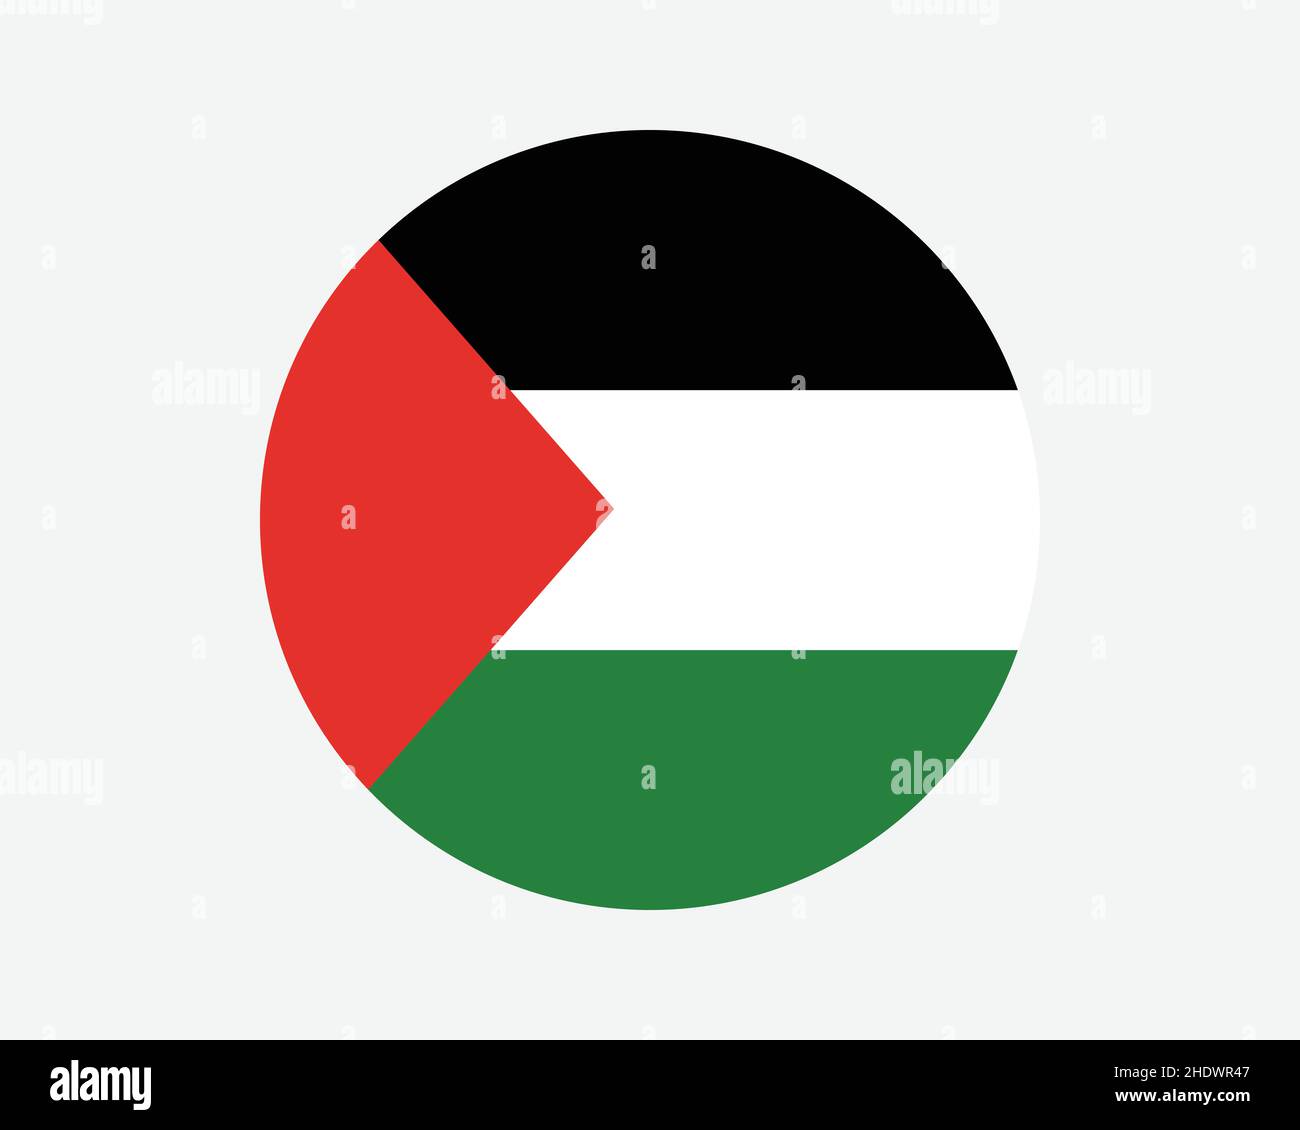 Vintage Grunge Stil Palästina-Flagge mit Pinselstrich: Stock-Vektorgrafik  (Lizenzfrei) 2297715909